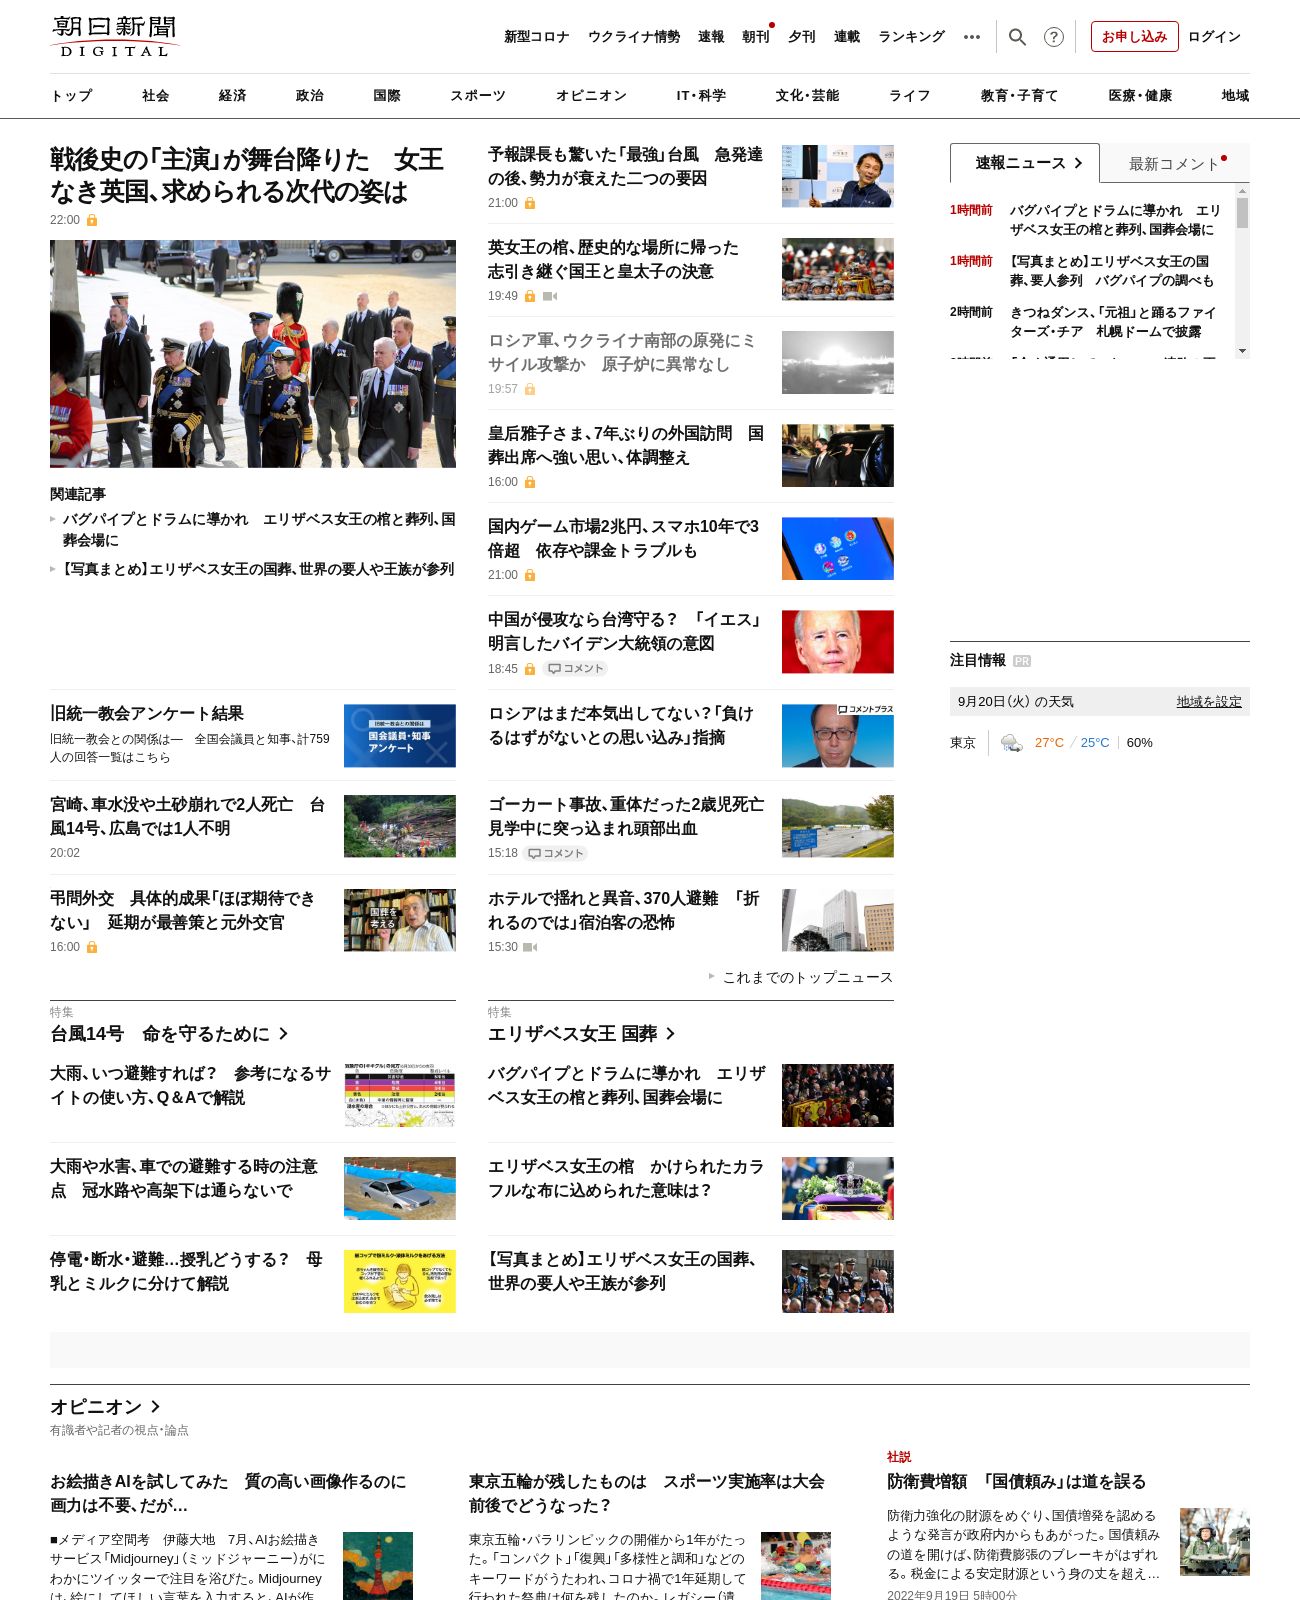 Asahi Shimbun at 2022-09-19 23:57:32+09:00 local time